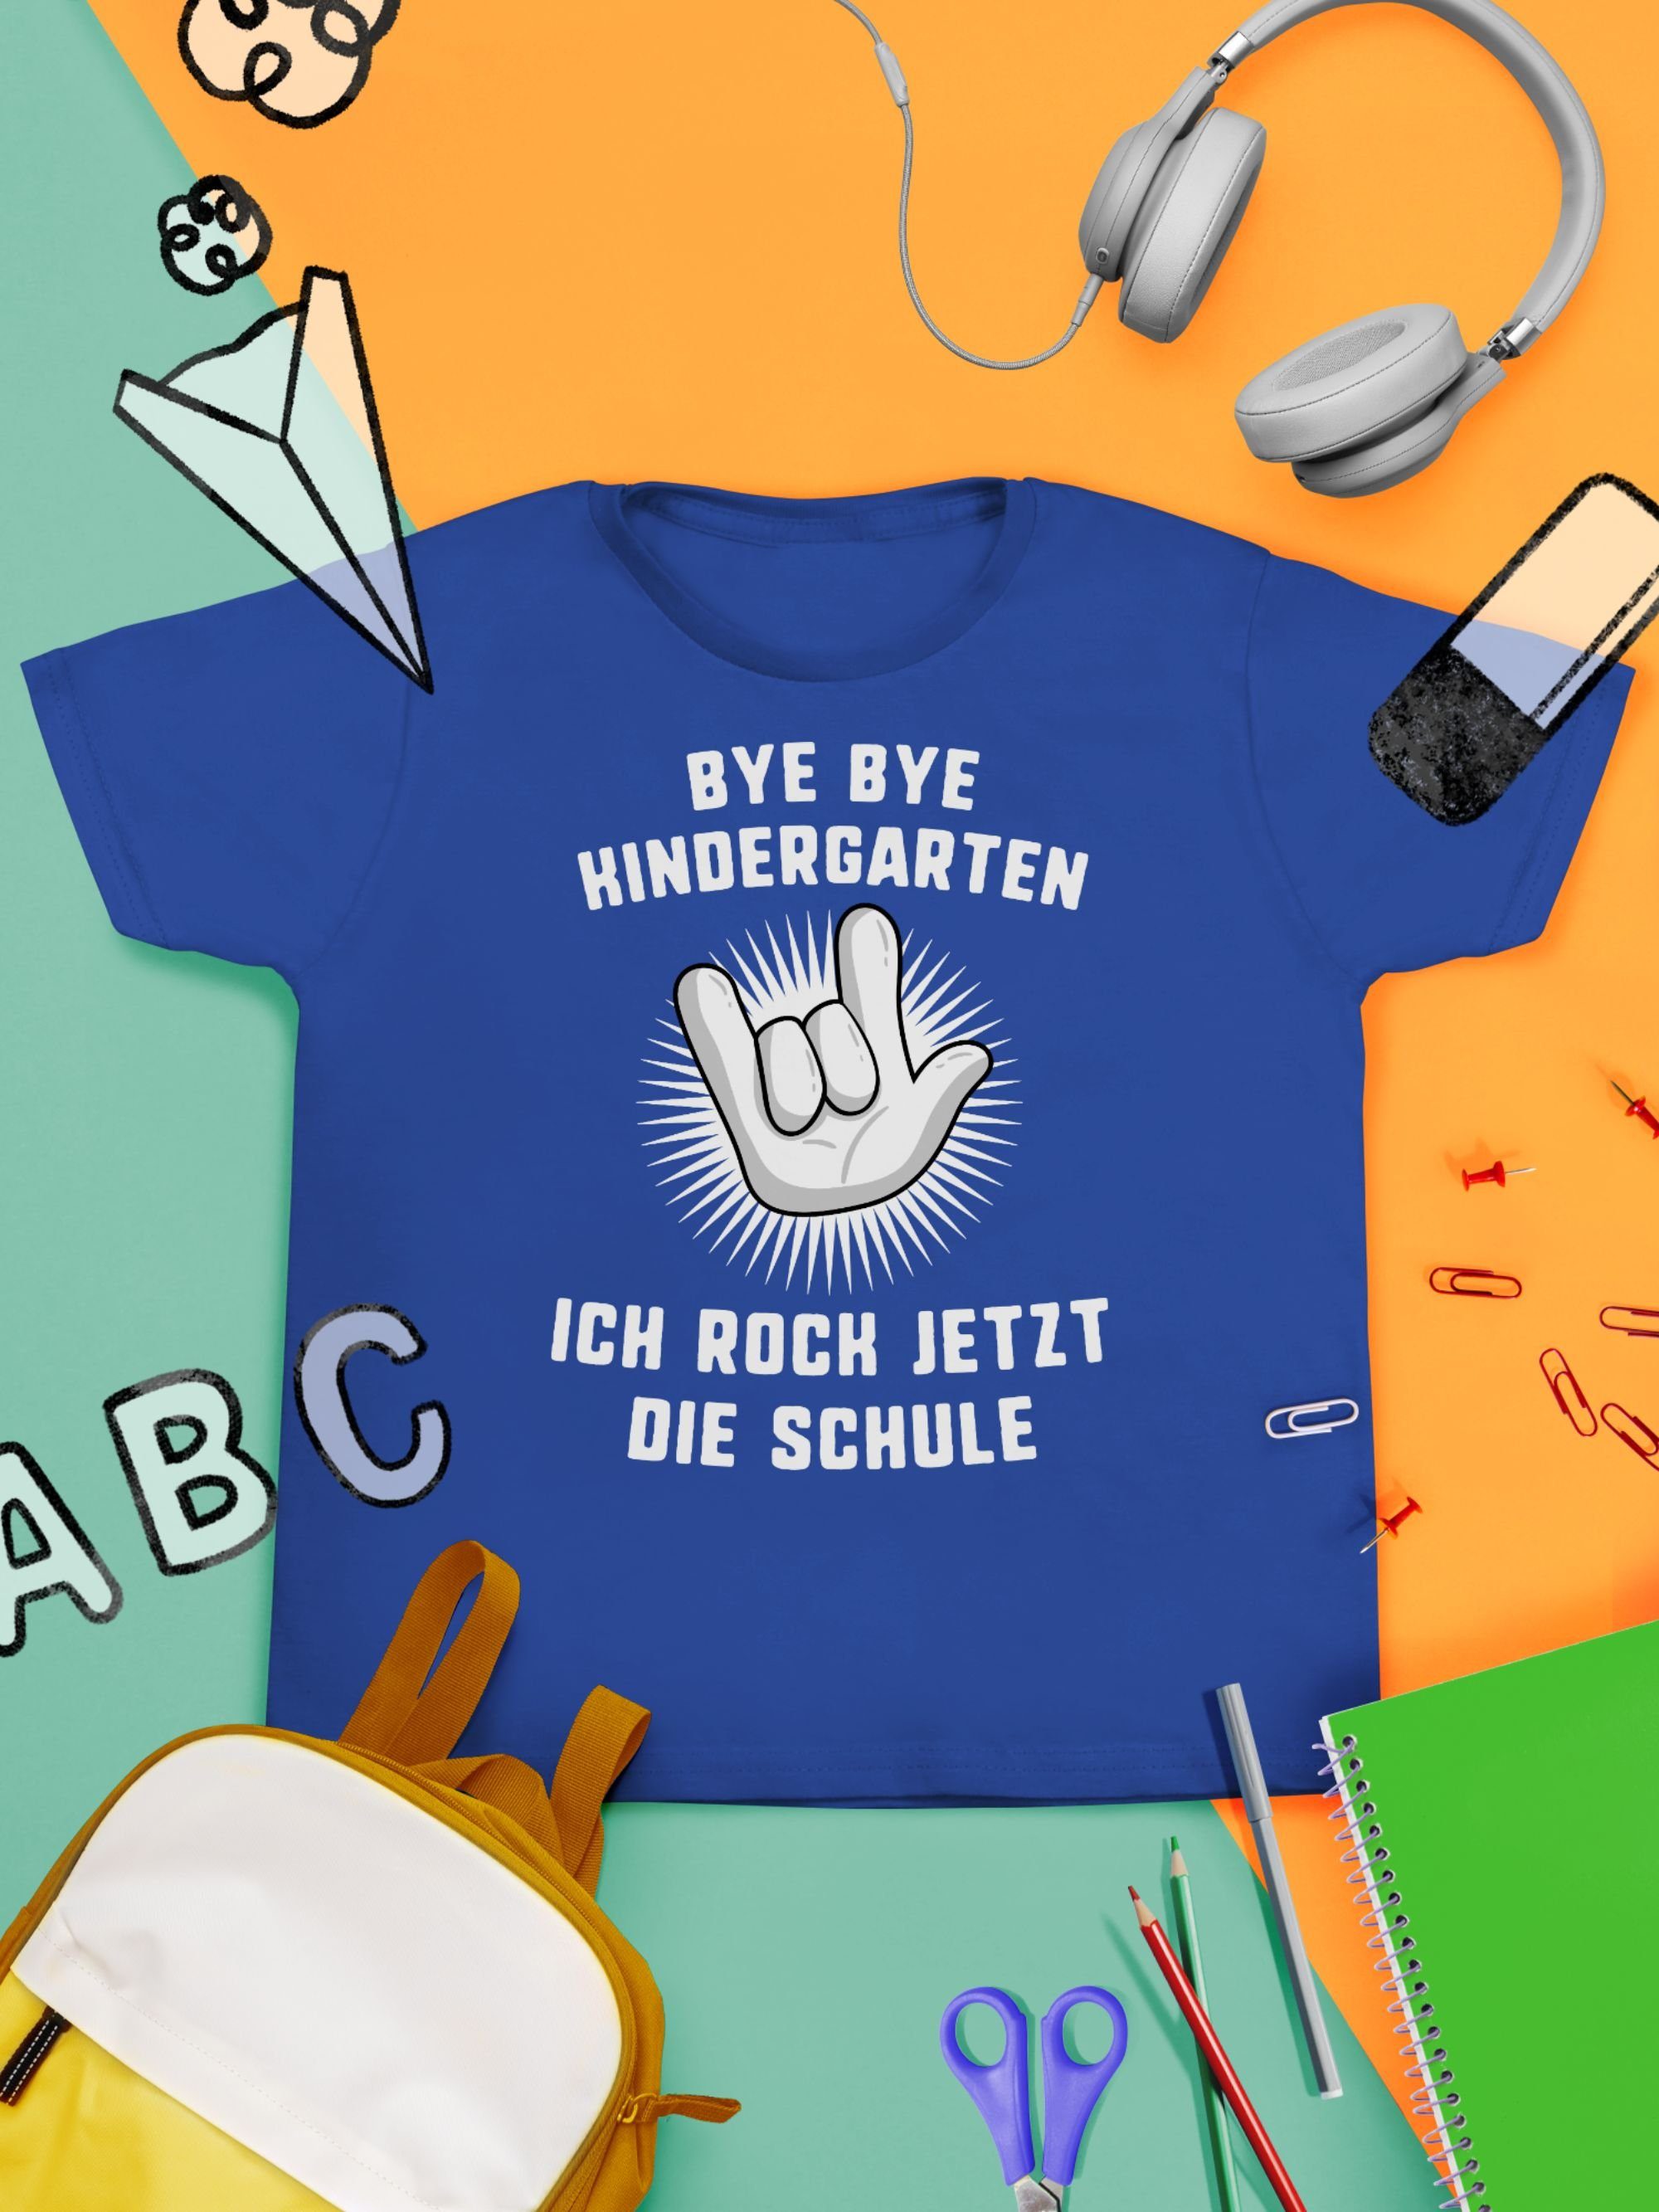 T-Shirt Geschenke Shirtracer Junge Ich Bye 2 Schulanfang Bye Einschulung jetzt die Hand Kindergarten Royalblau rock Schule